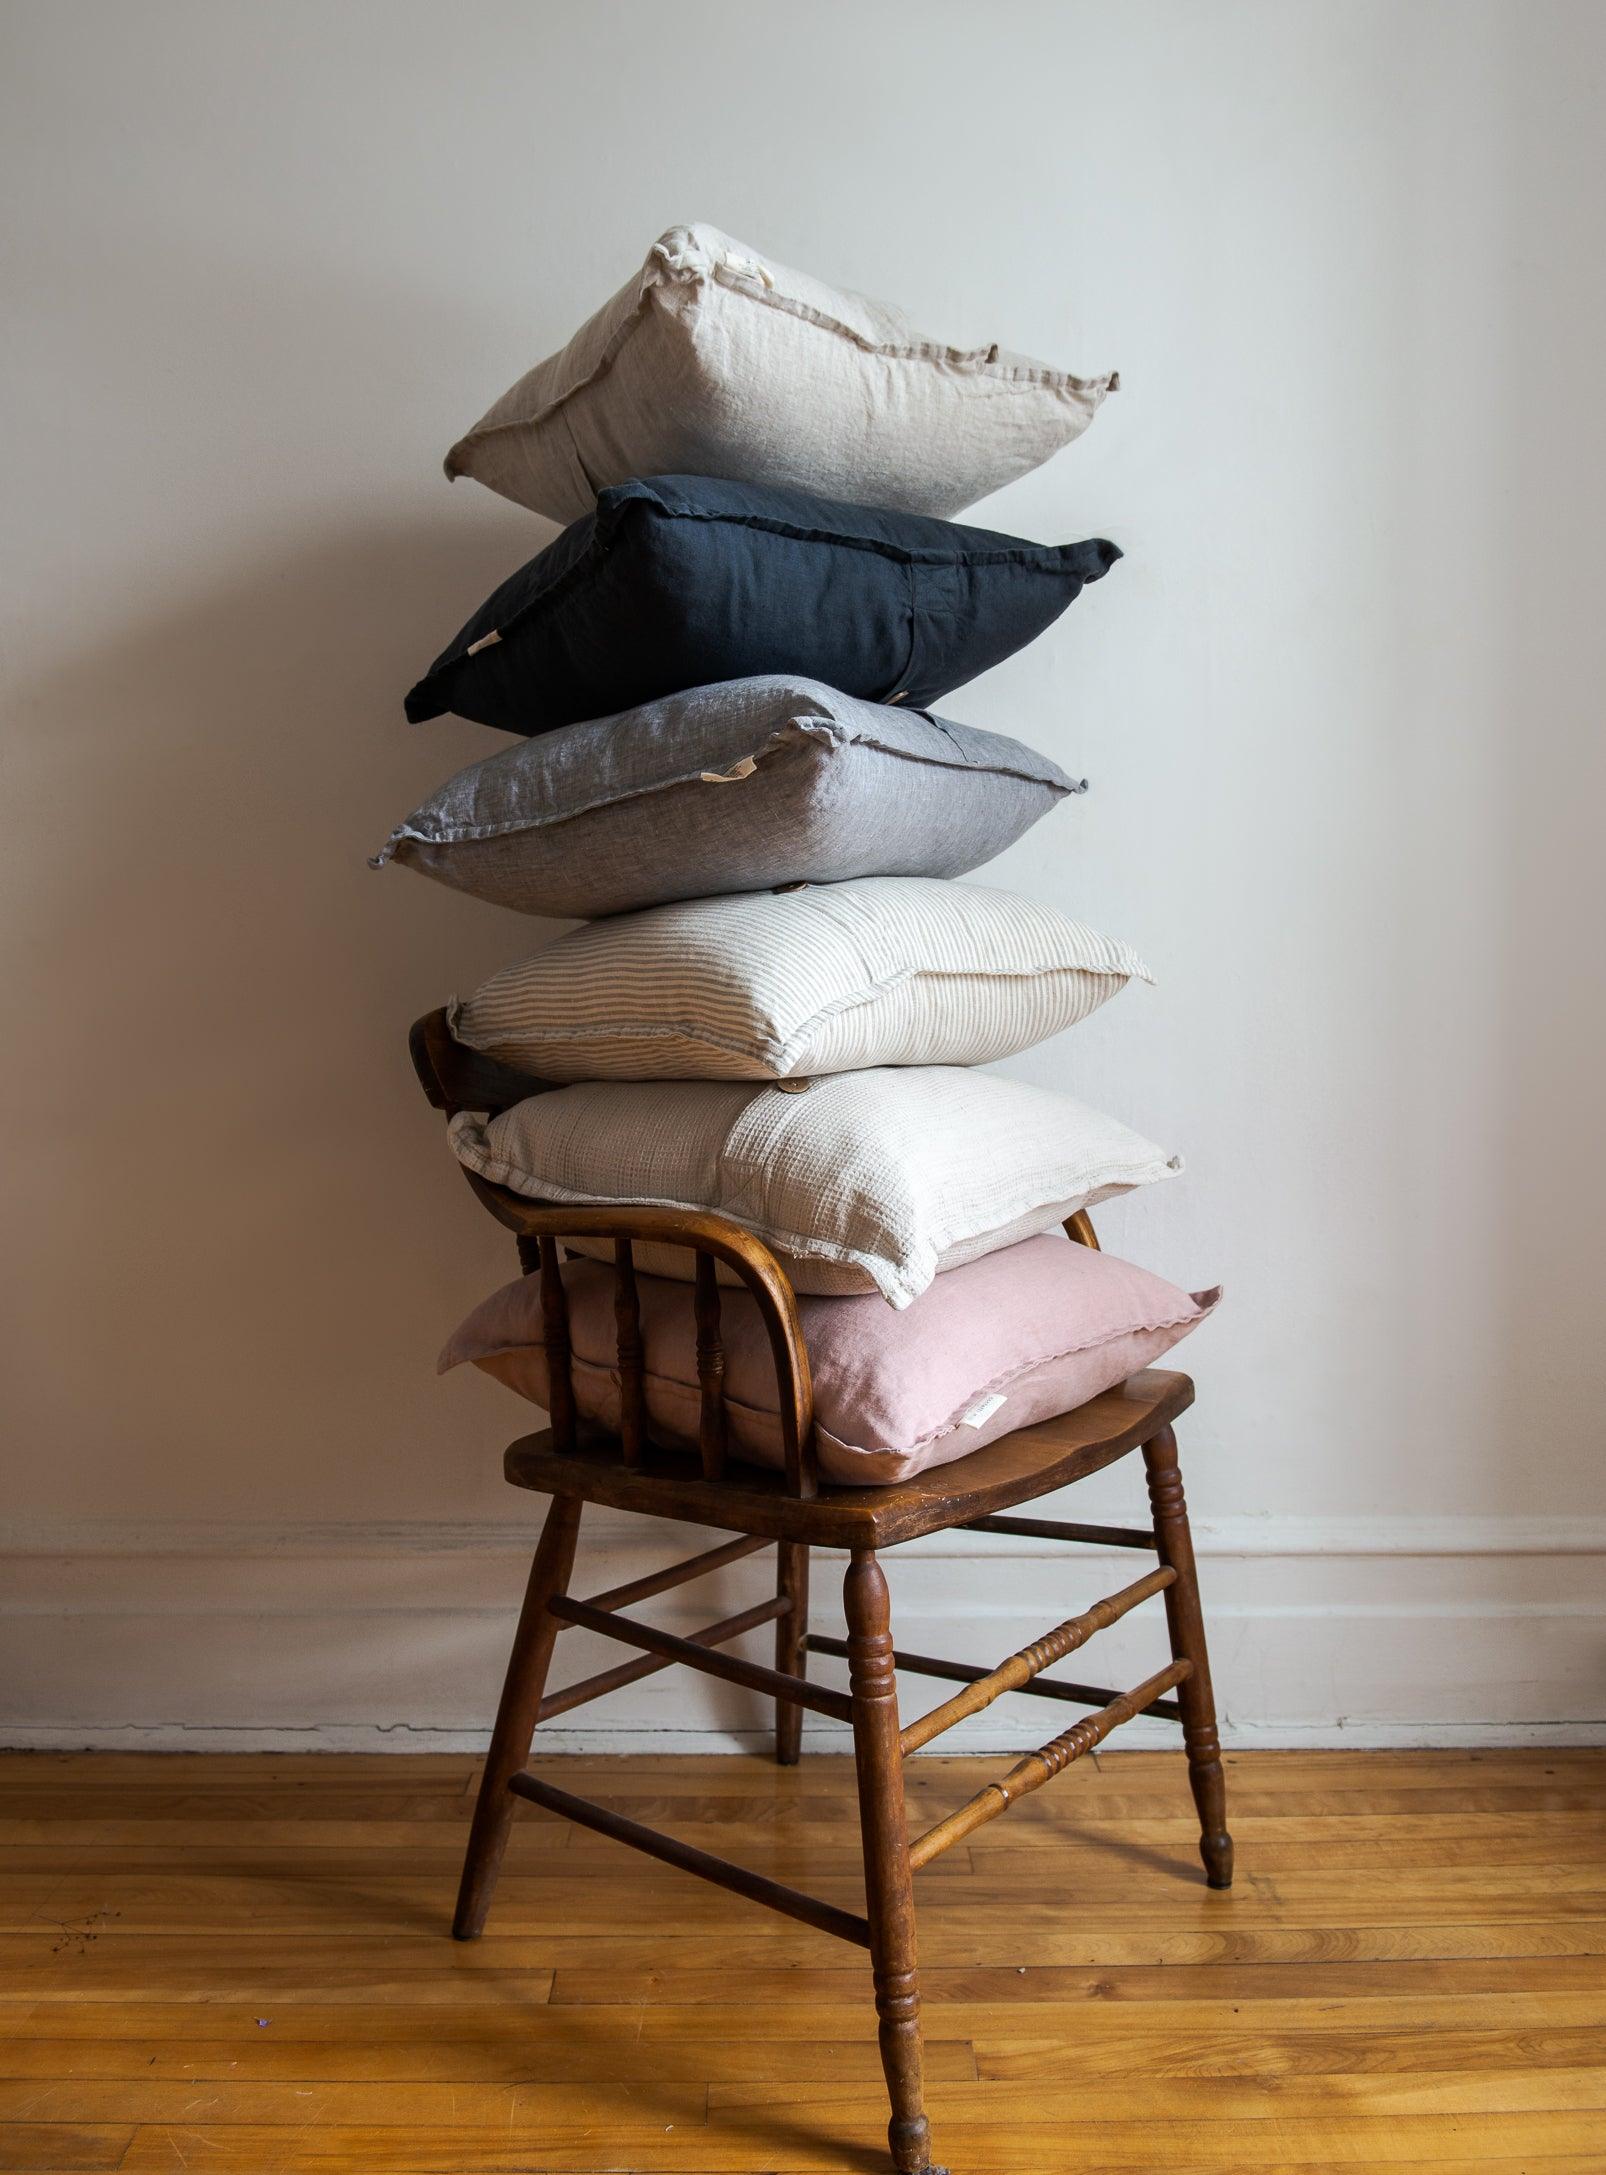 Linen Cushion Cover - Confetti Mill